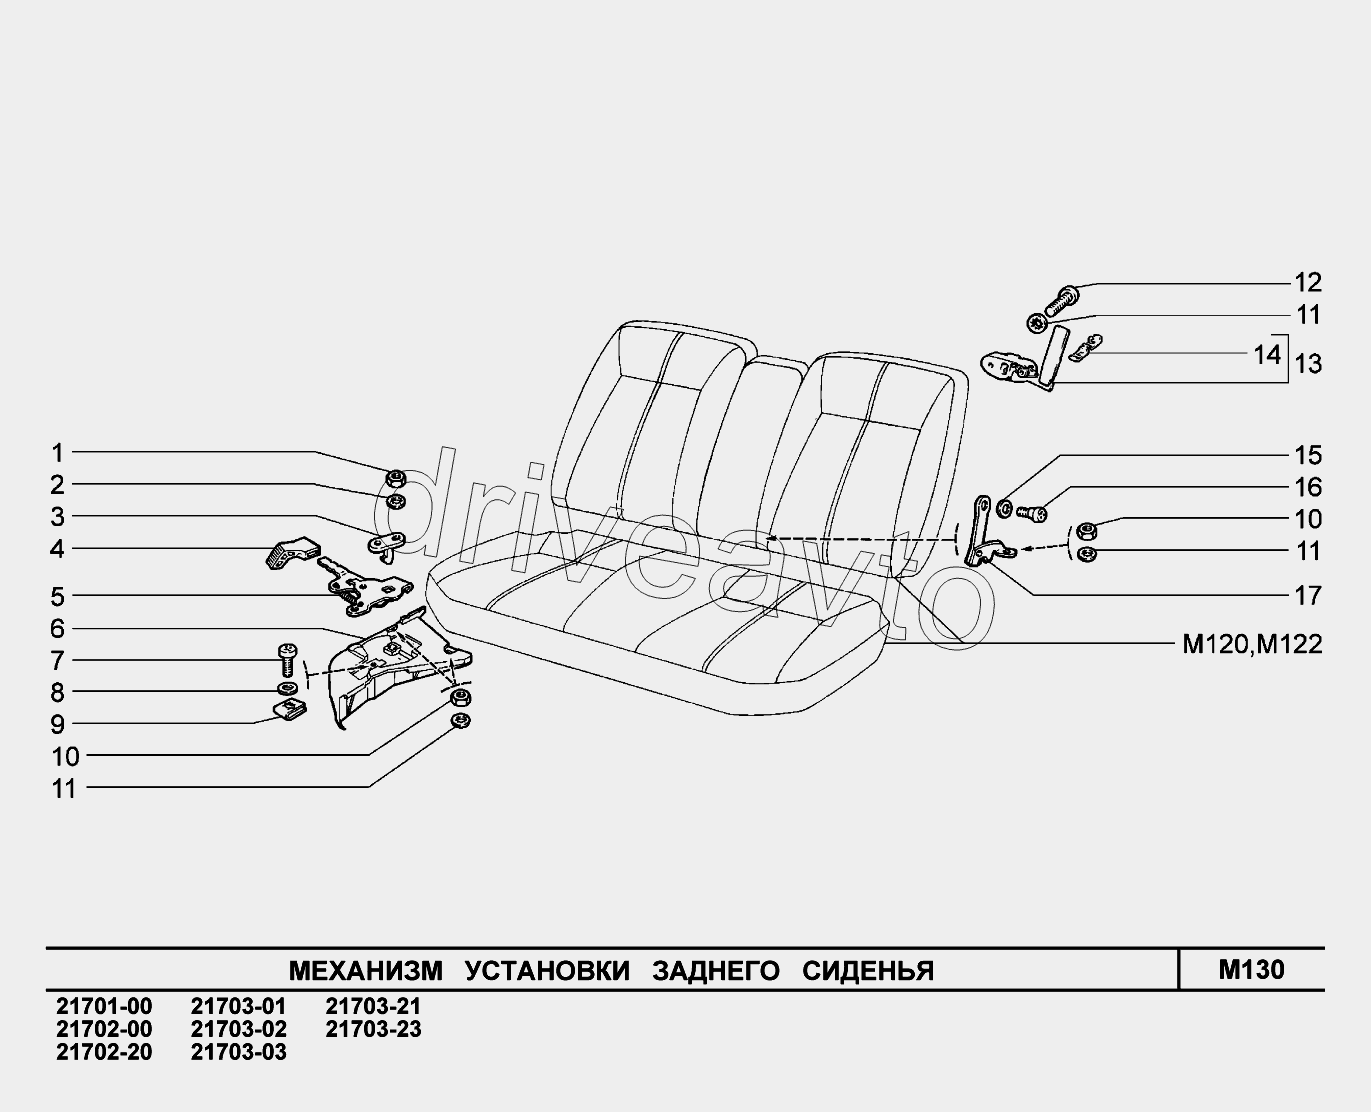 M130. Механизм установки заднего сиденья